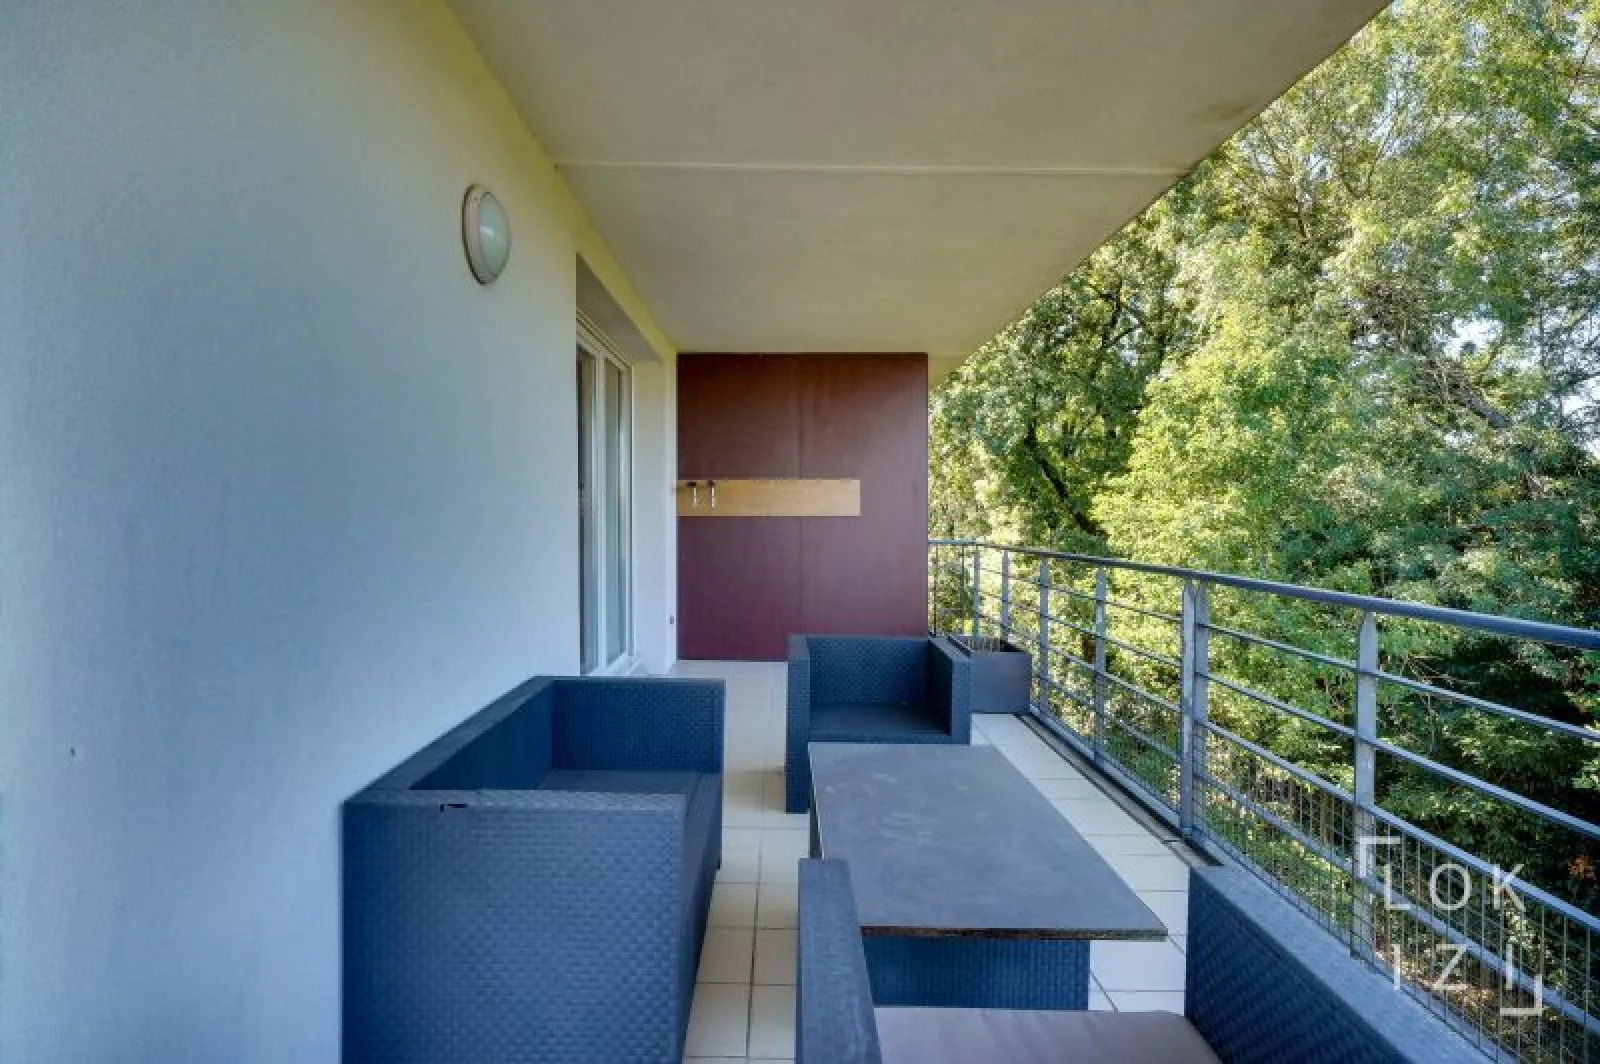 Location appartement meublé 3 pièces 67m² (Bordeaux - Cenon)